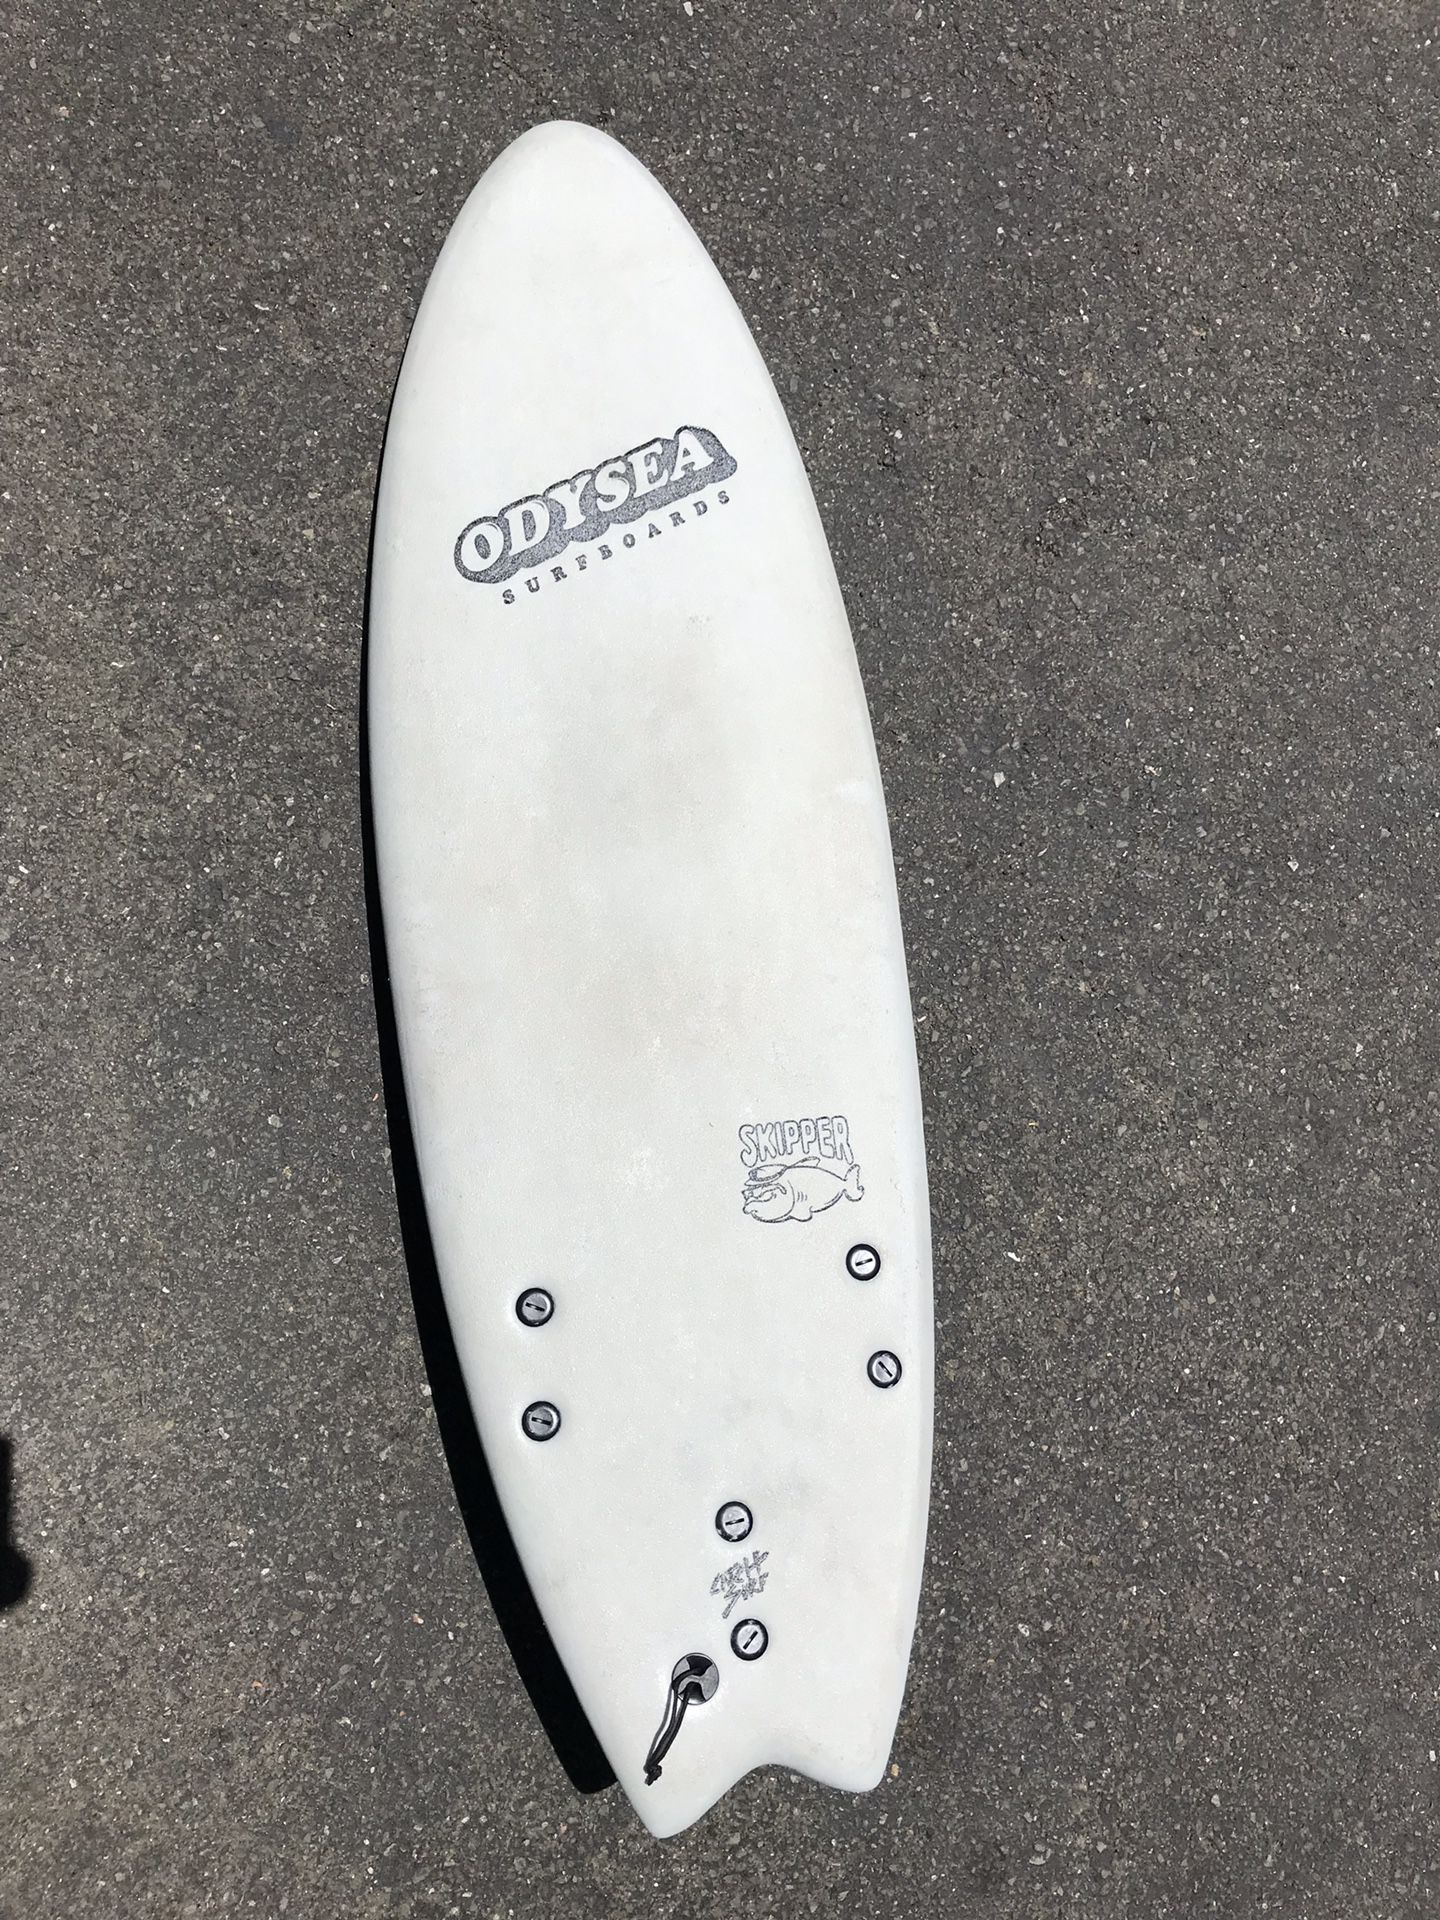 Odysea Surfboard 5’6